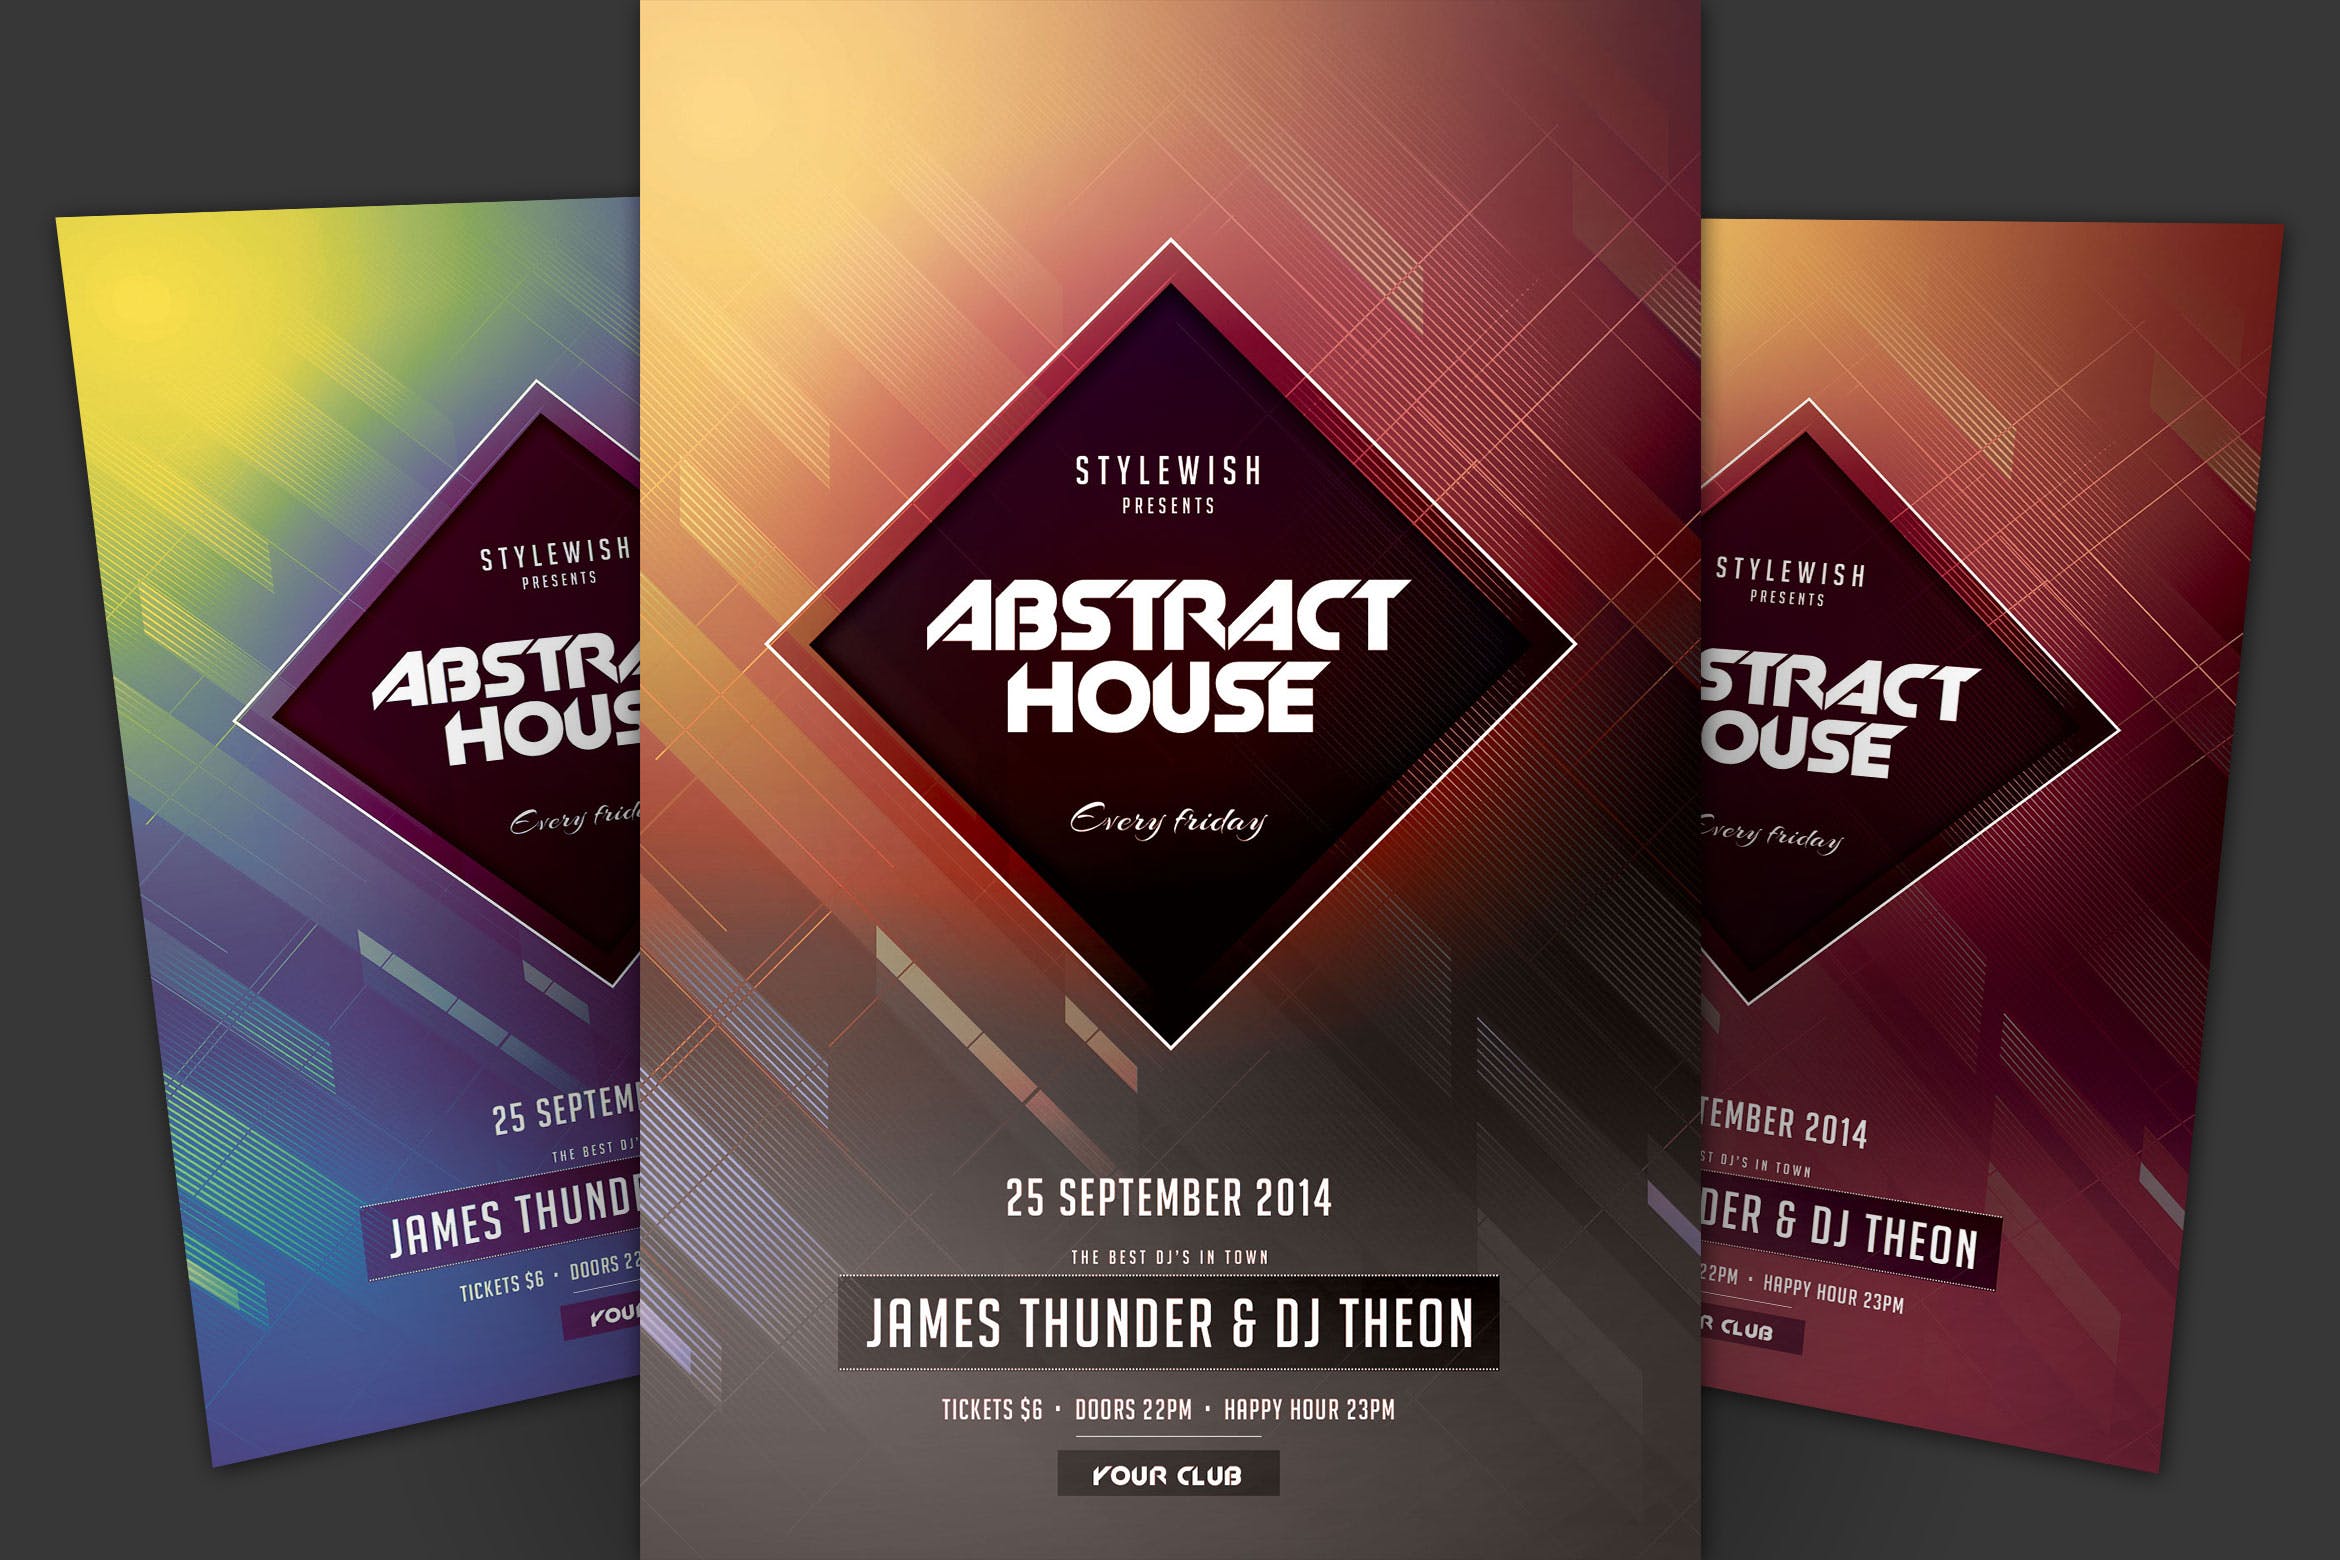 抽象设计风格现代音乐活动海报传单非凡图库精选PSD模板 Abstract House Flyer插图